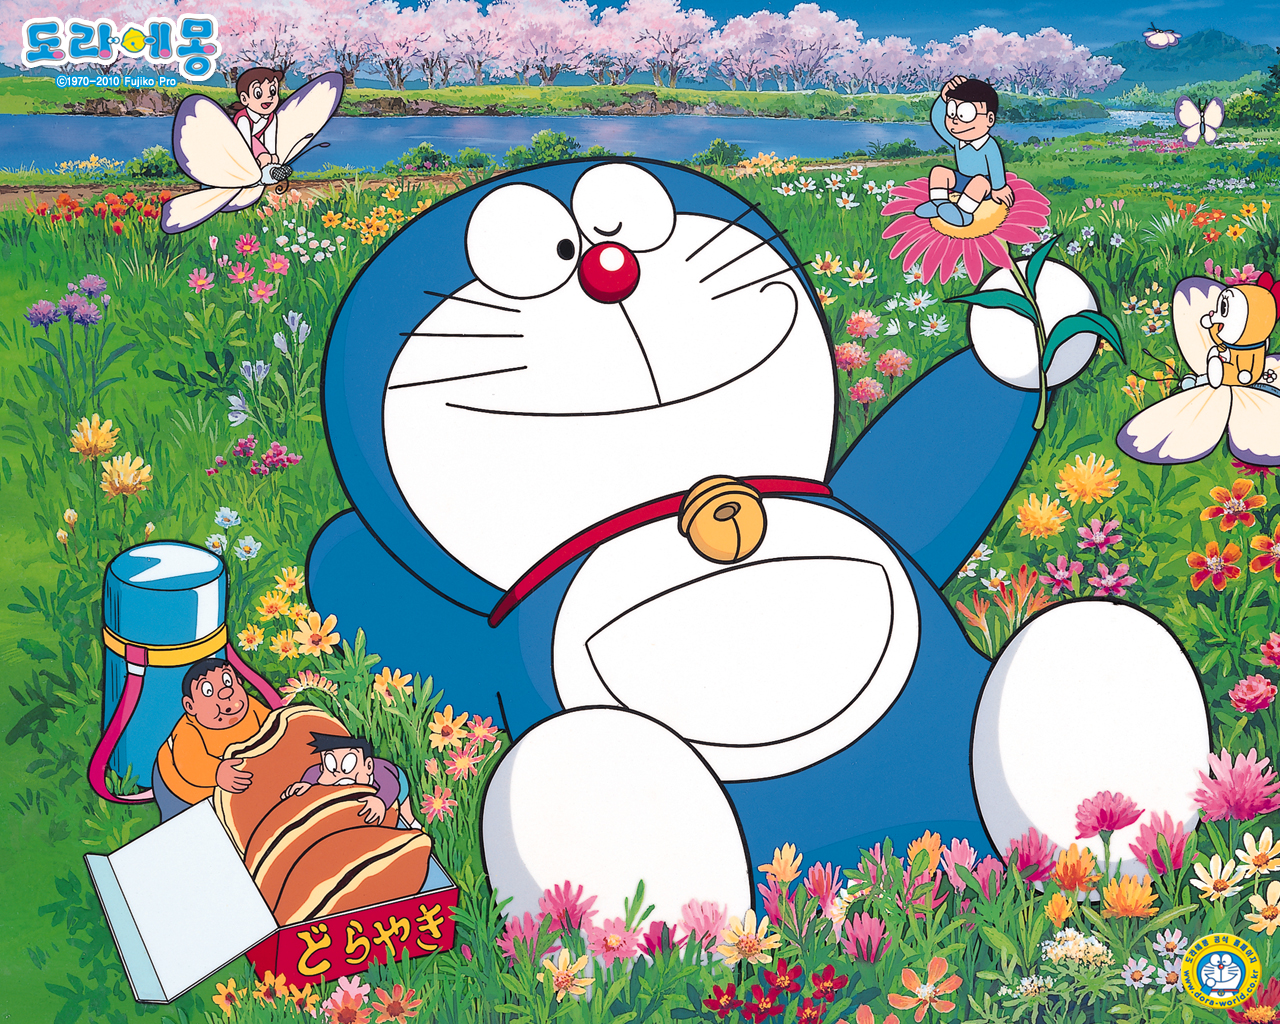 Full HD Doraemon Background